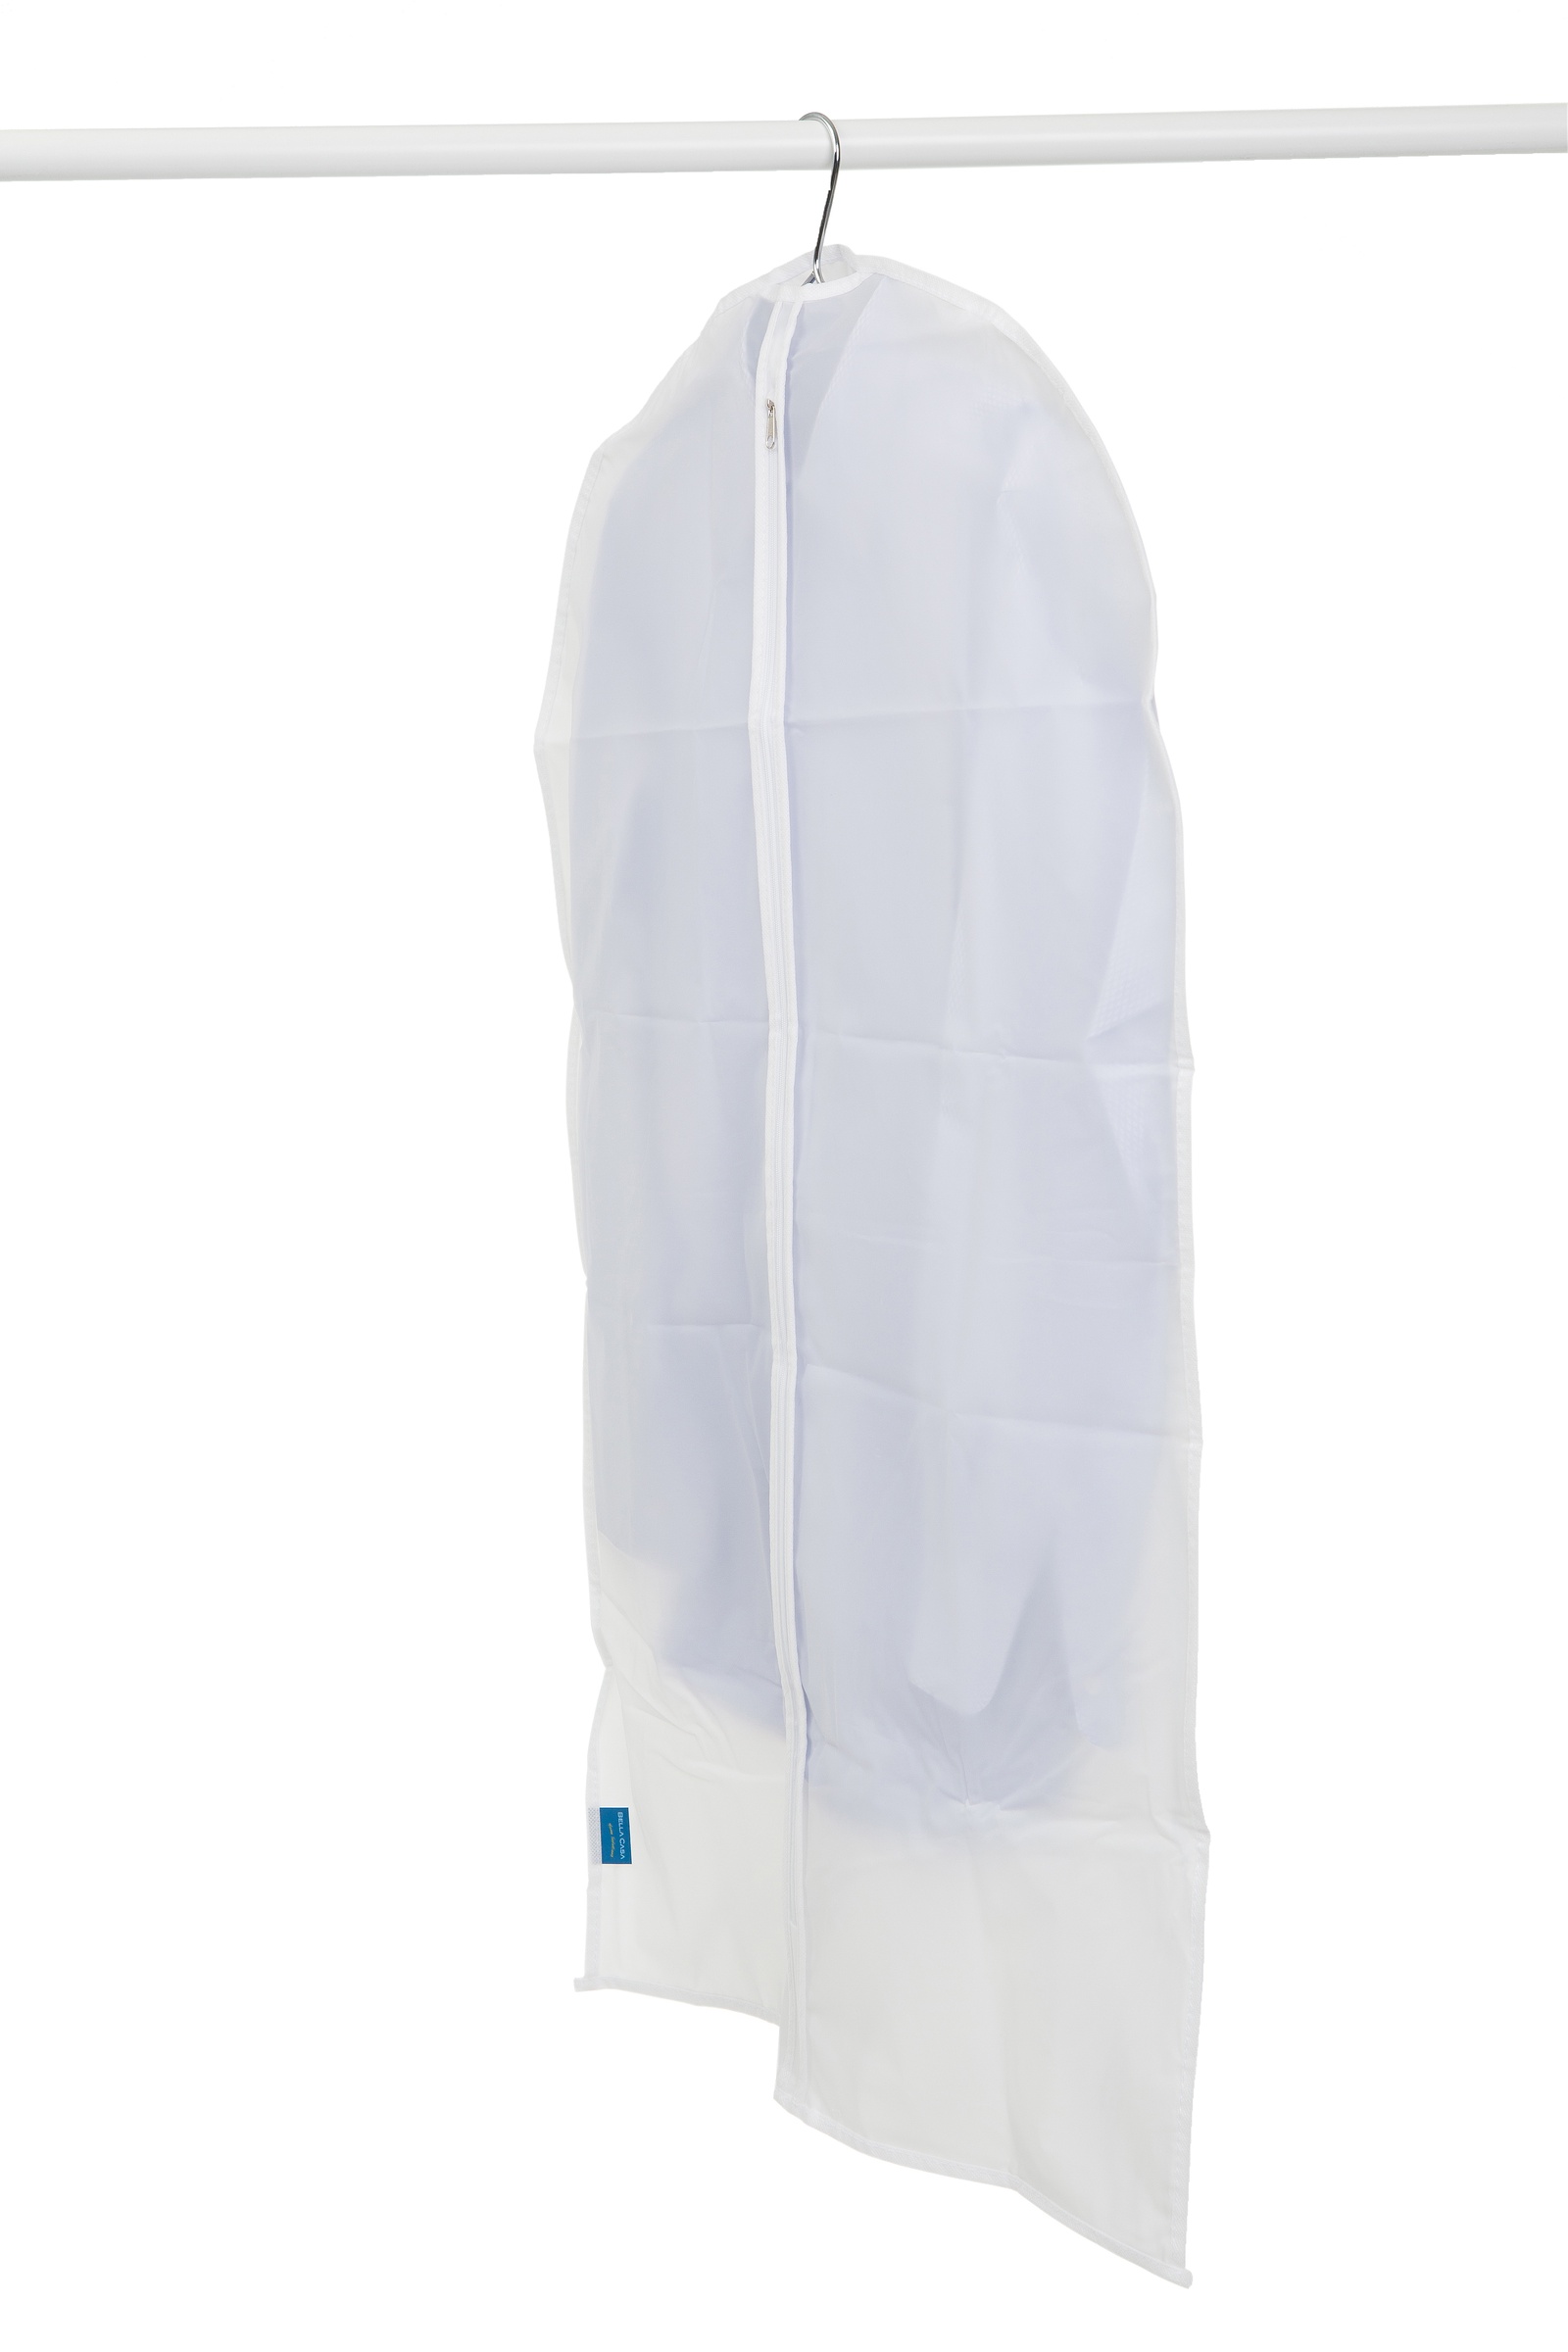 фото Чехол на молнии Bella Casa, для хранения одежды, цвет: белый, 60х140 см